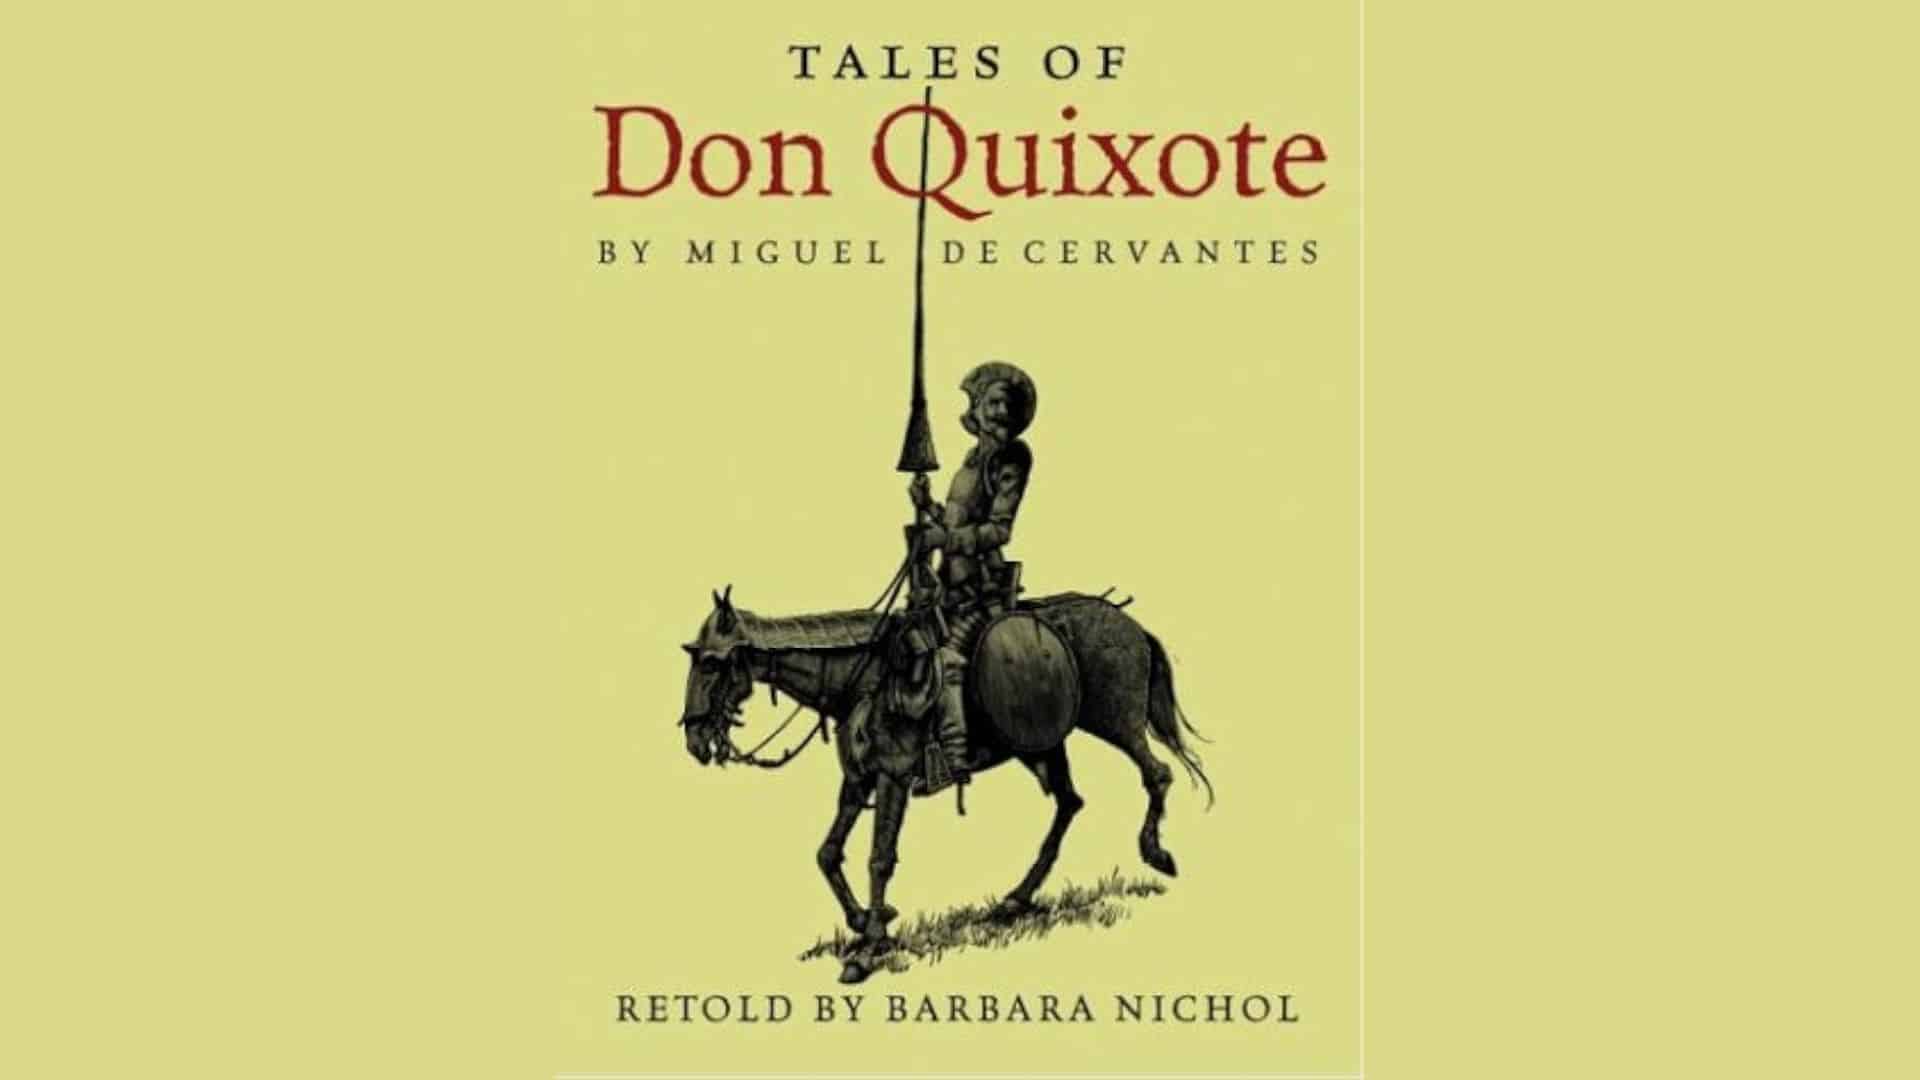  Don Quixote
